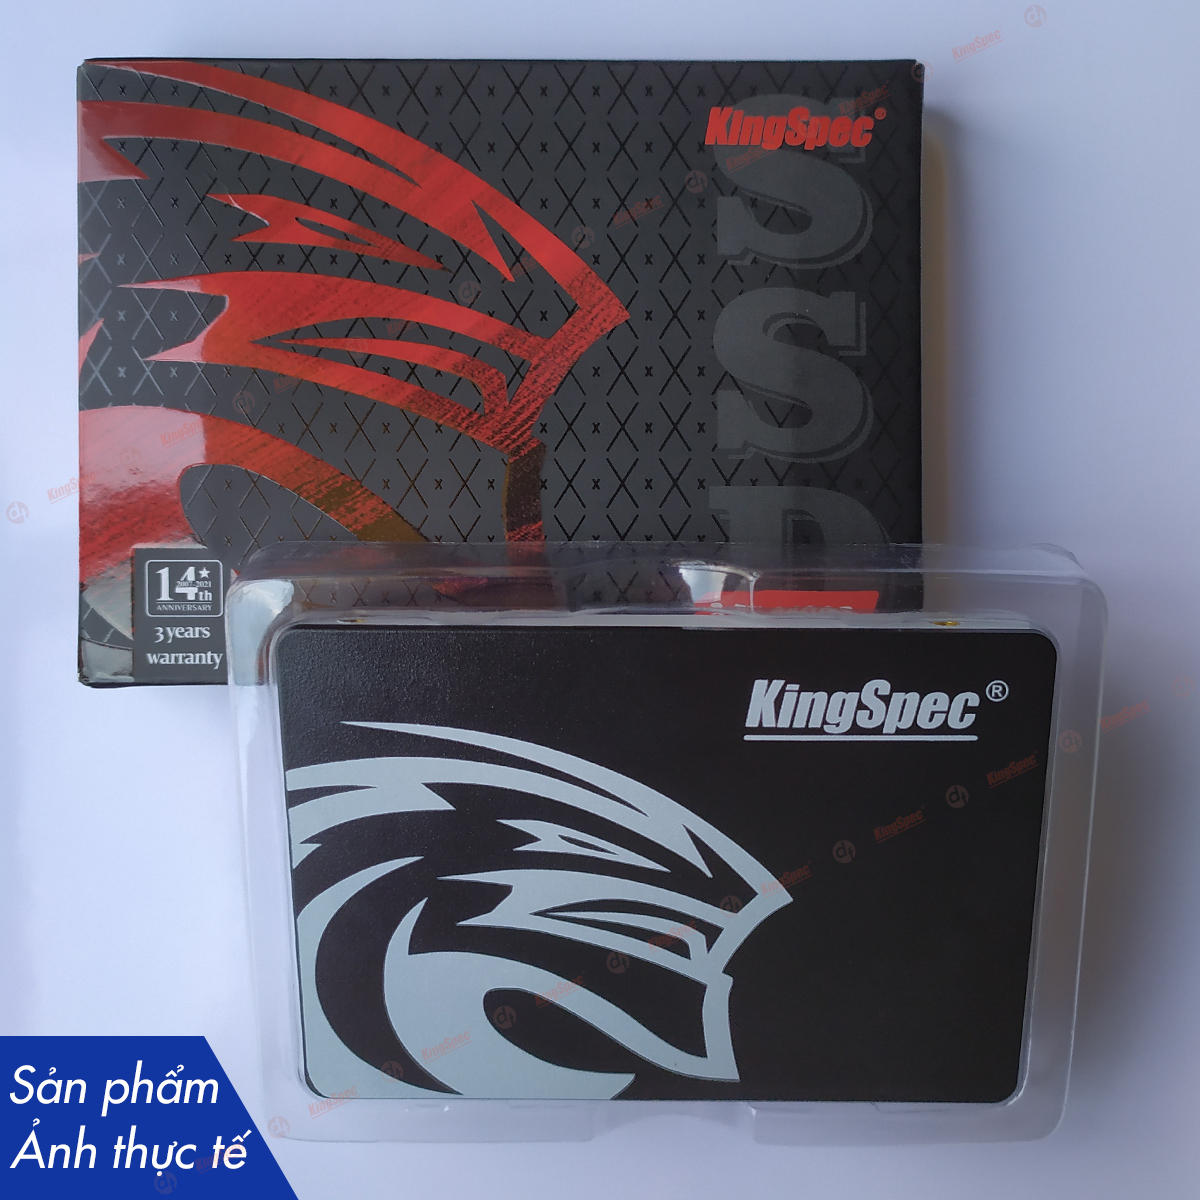 Ổ cứng SSD KingSpec 256GB / P3-256 - Hàng Chính Hãng